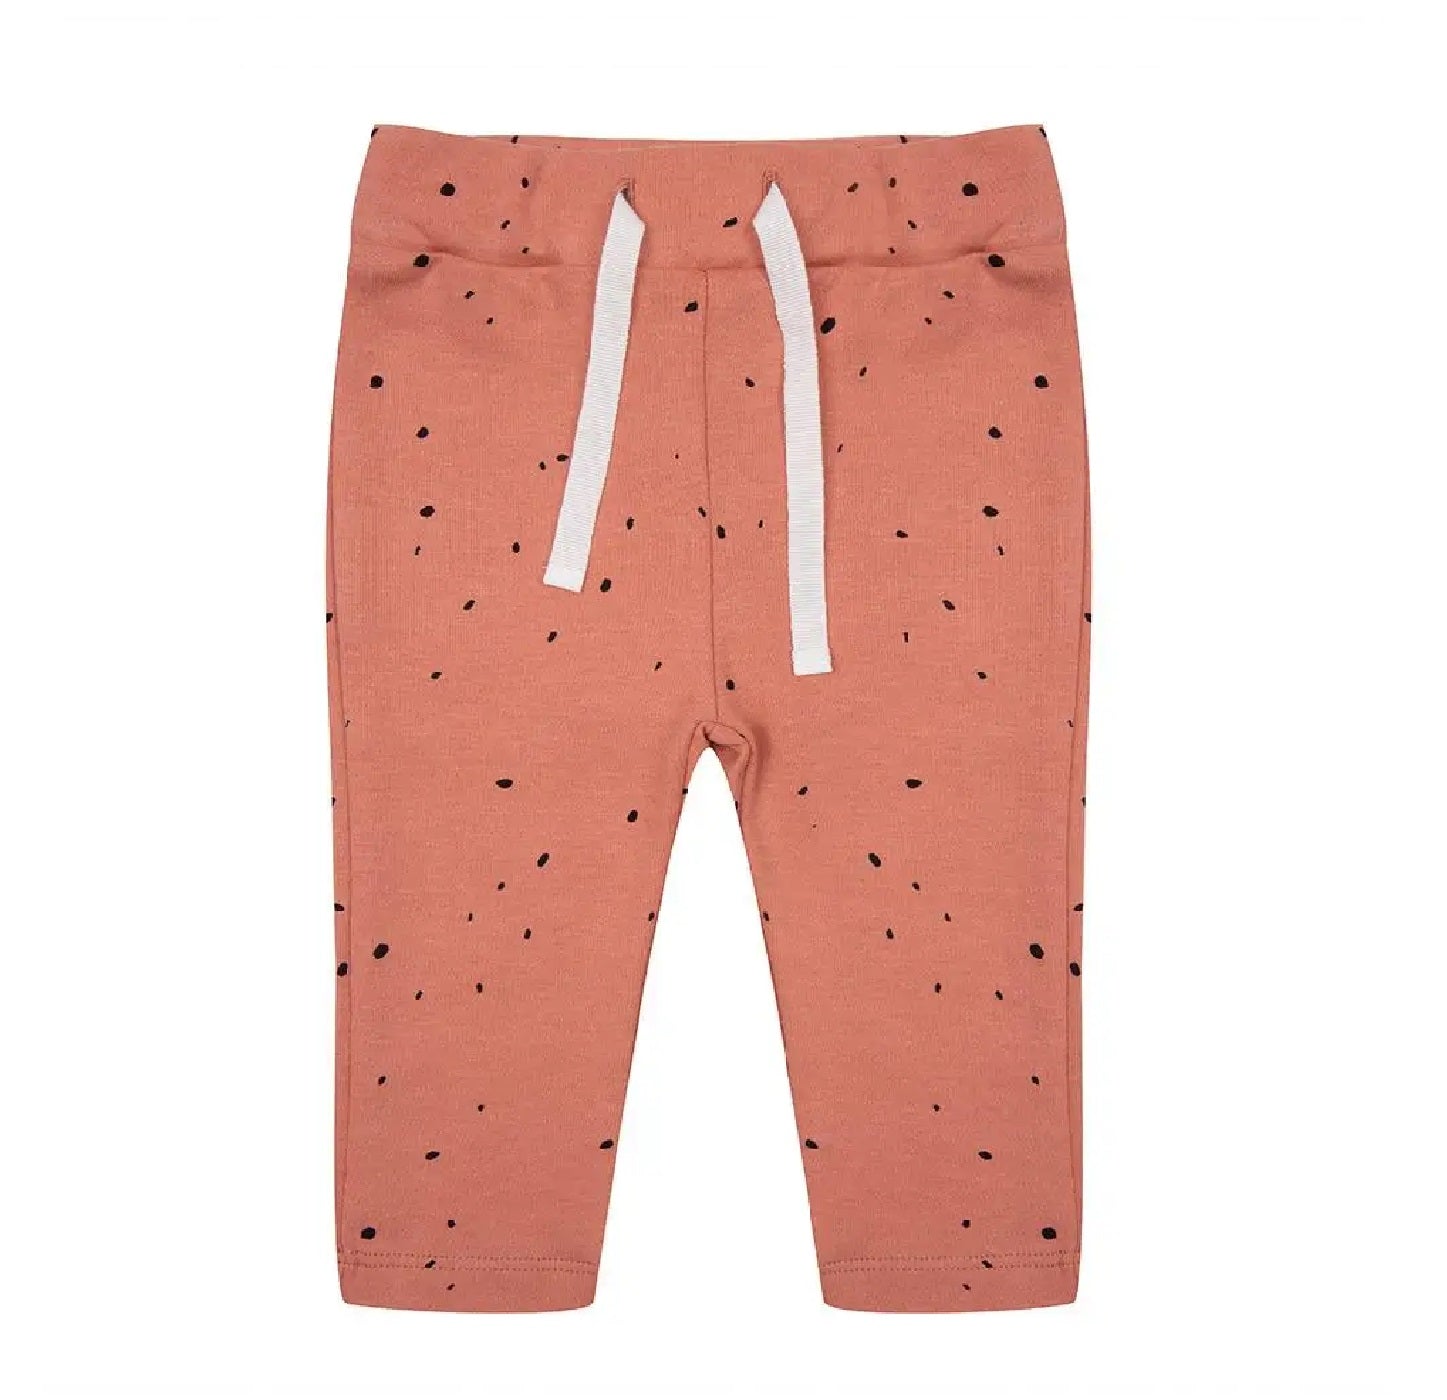 Een legging met dots print van Little Indians in de kleur oranje, gemaakt van 100% biologisch katoen.